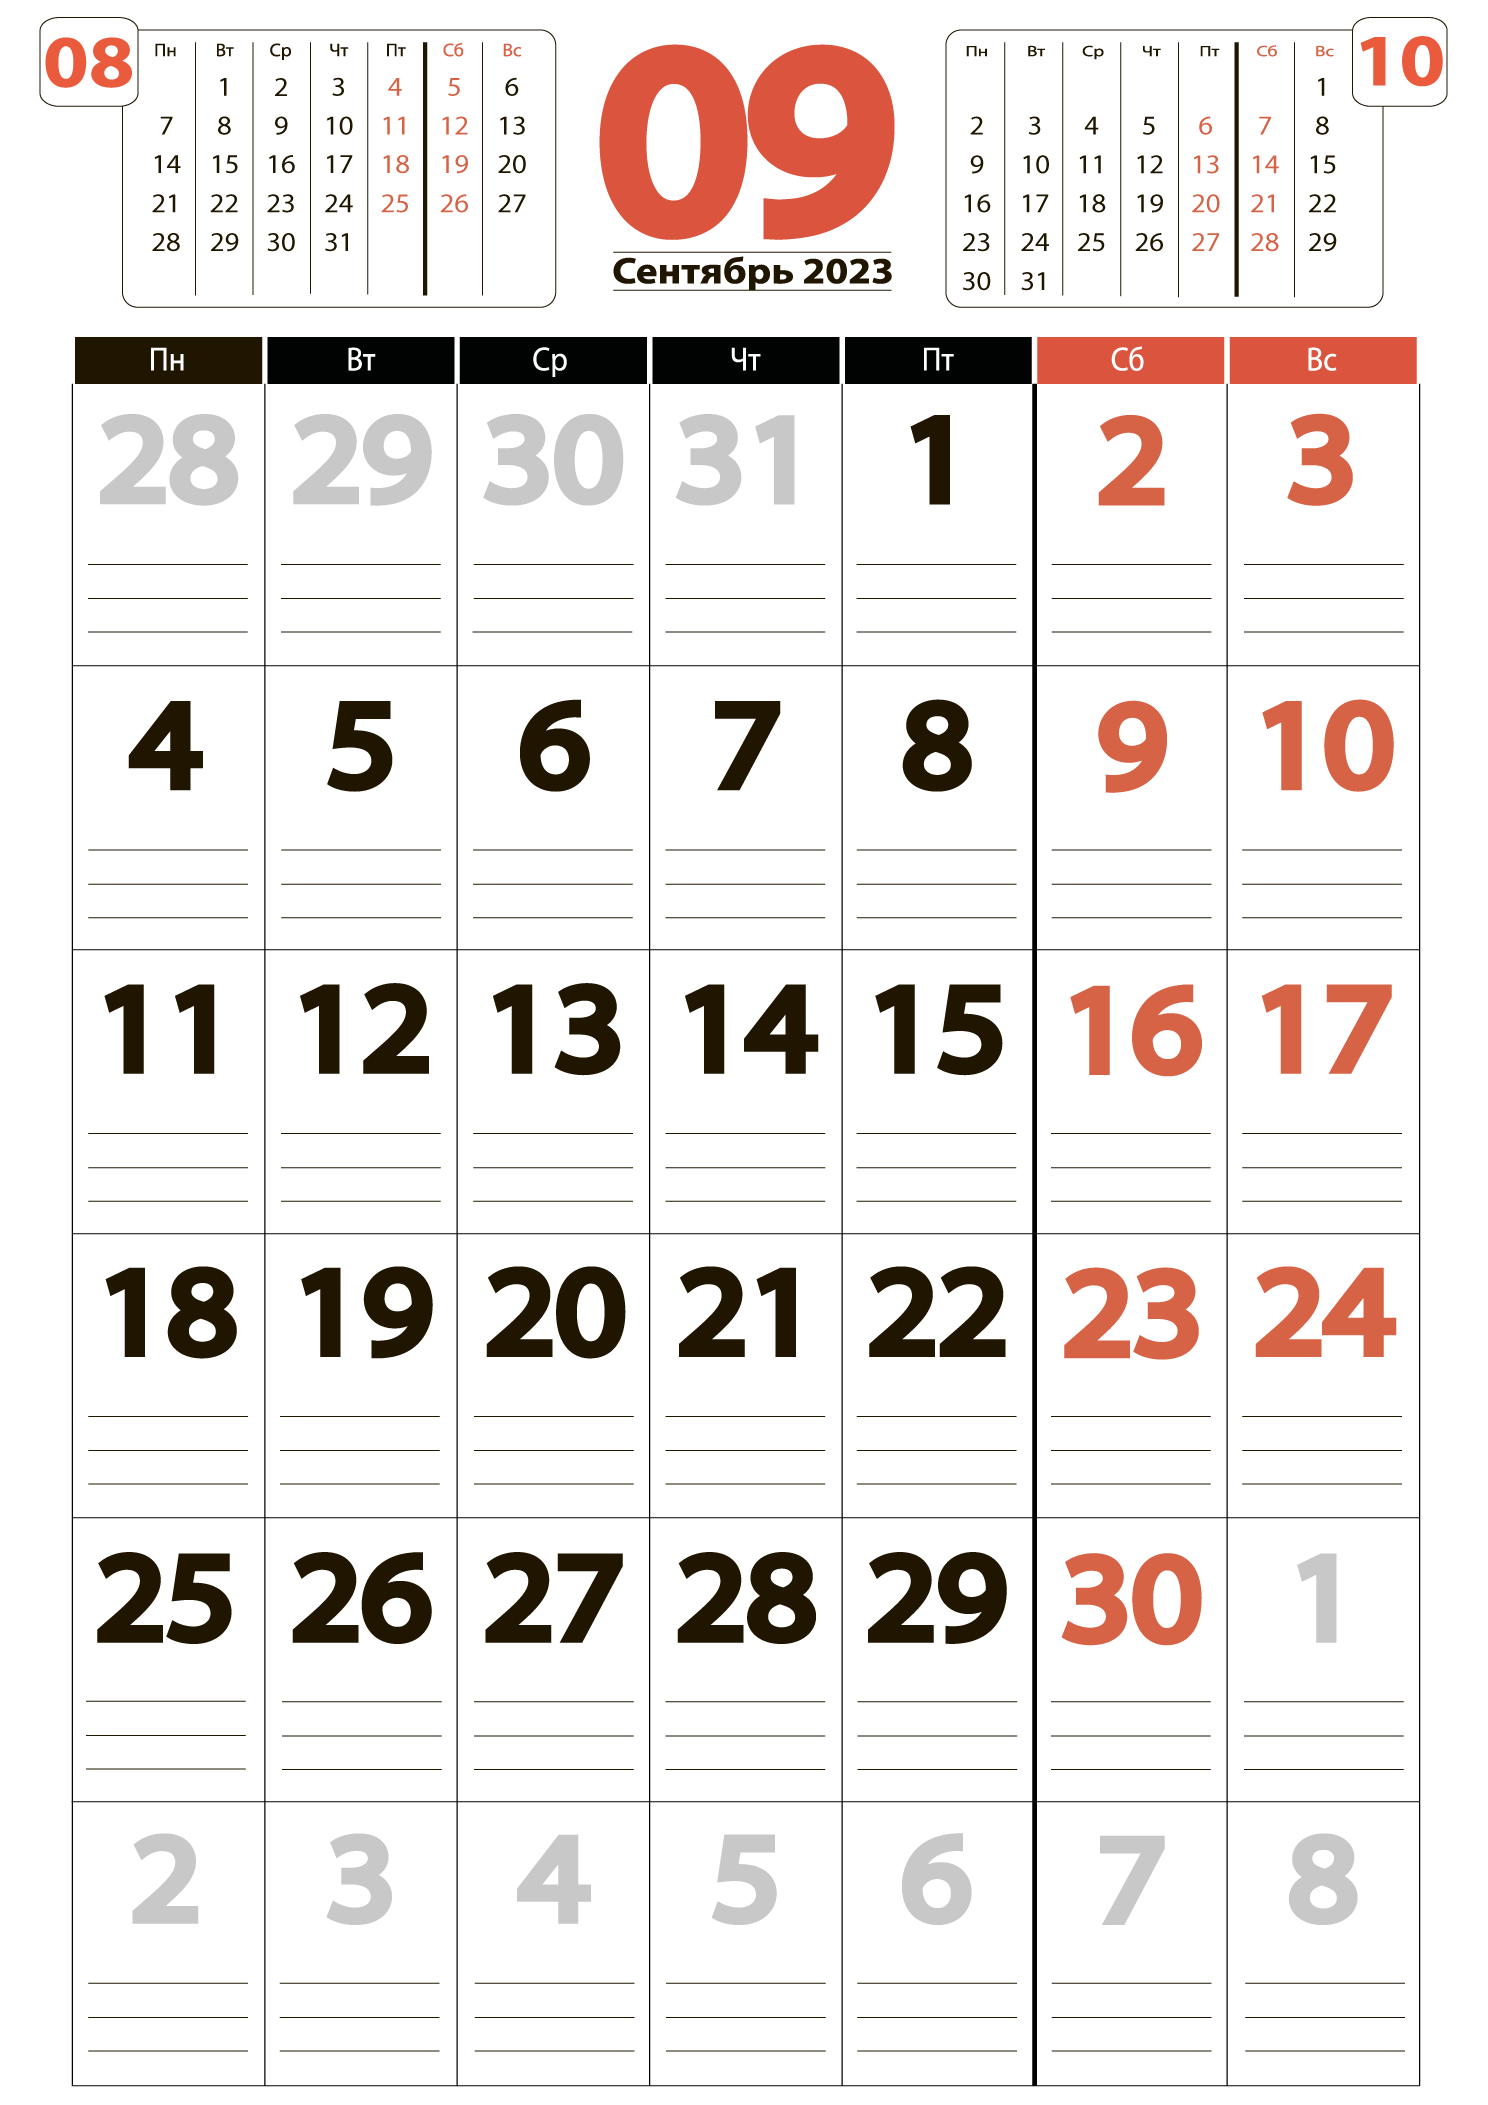 Печать крупного календаря на сентябрь 2023